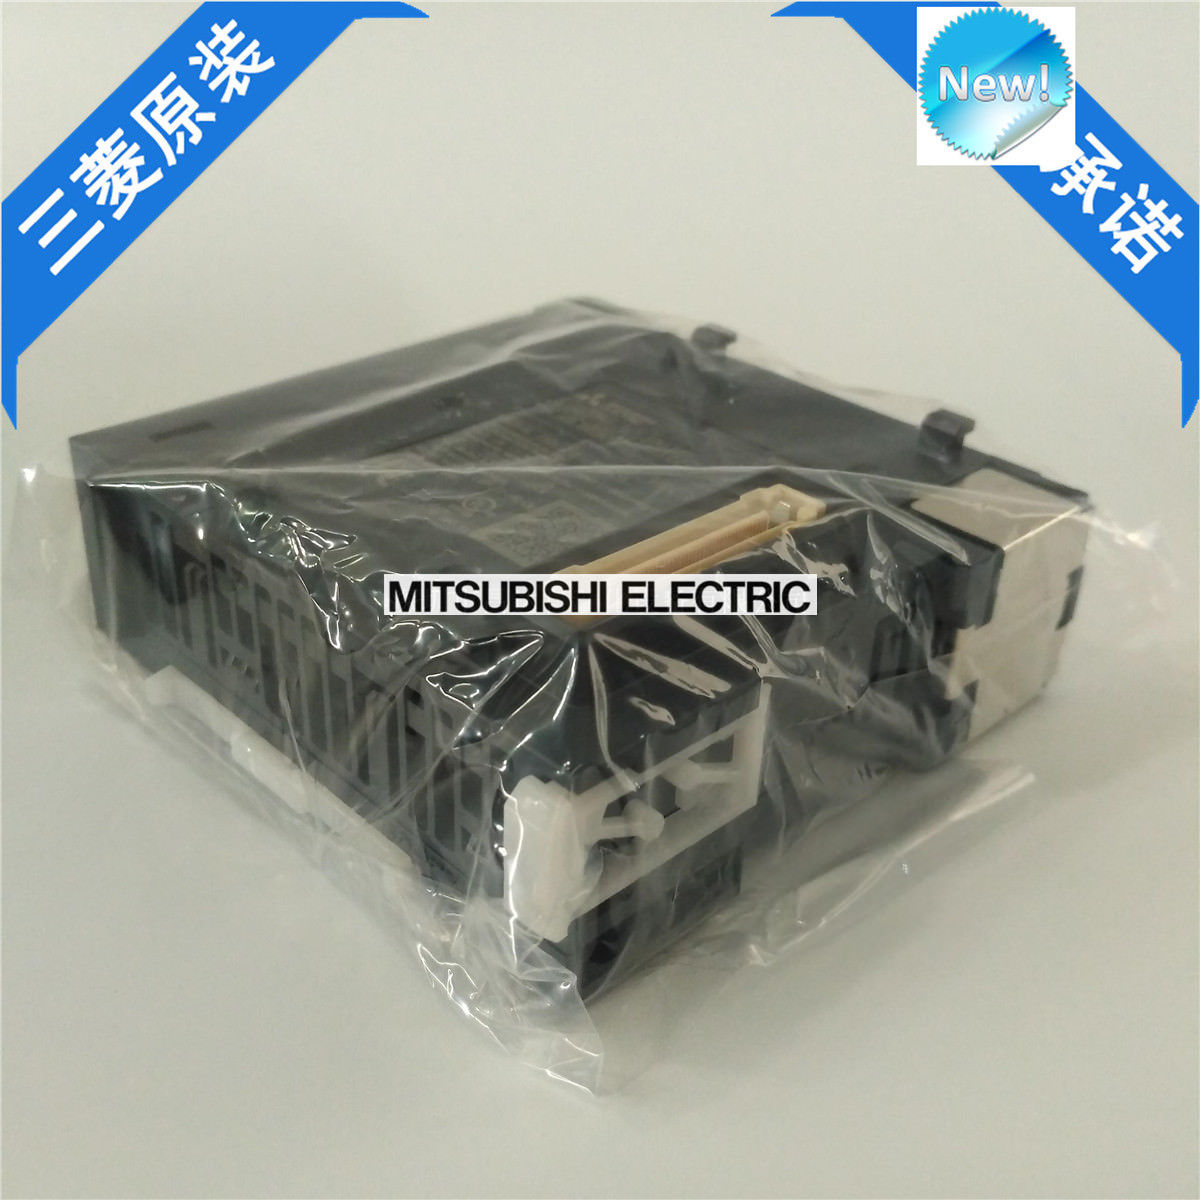 Brand New Mitsubishi PLC LJ71E71-100-CM In Box LJ71E71100CM - Click Image to Close